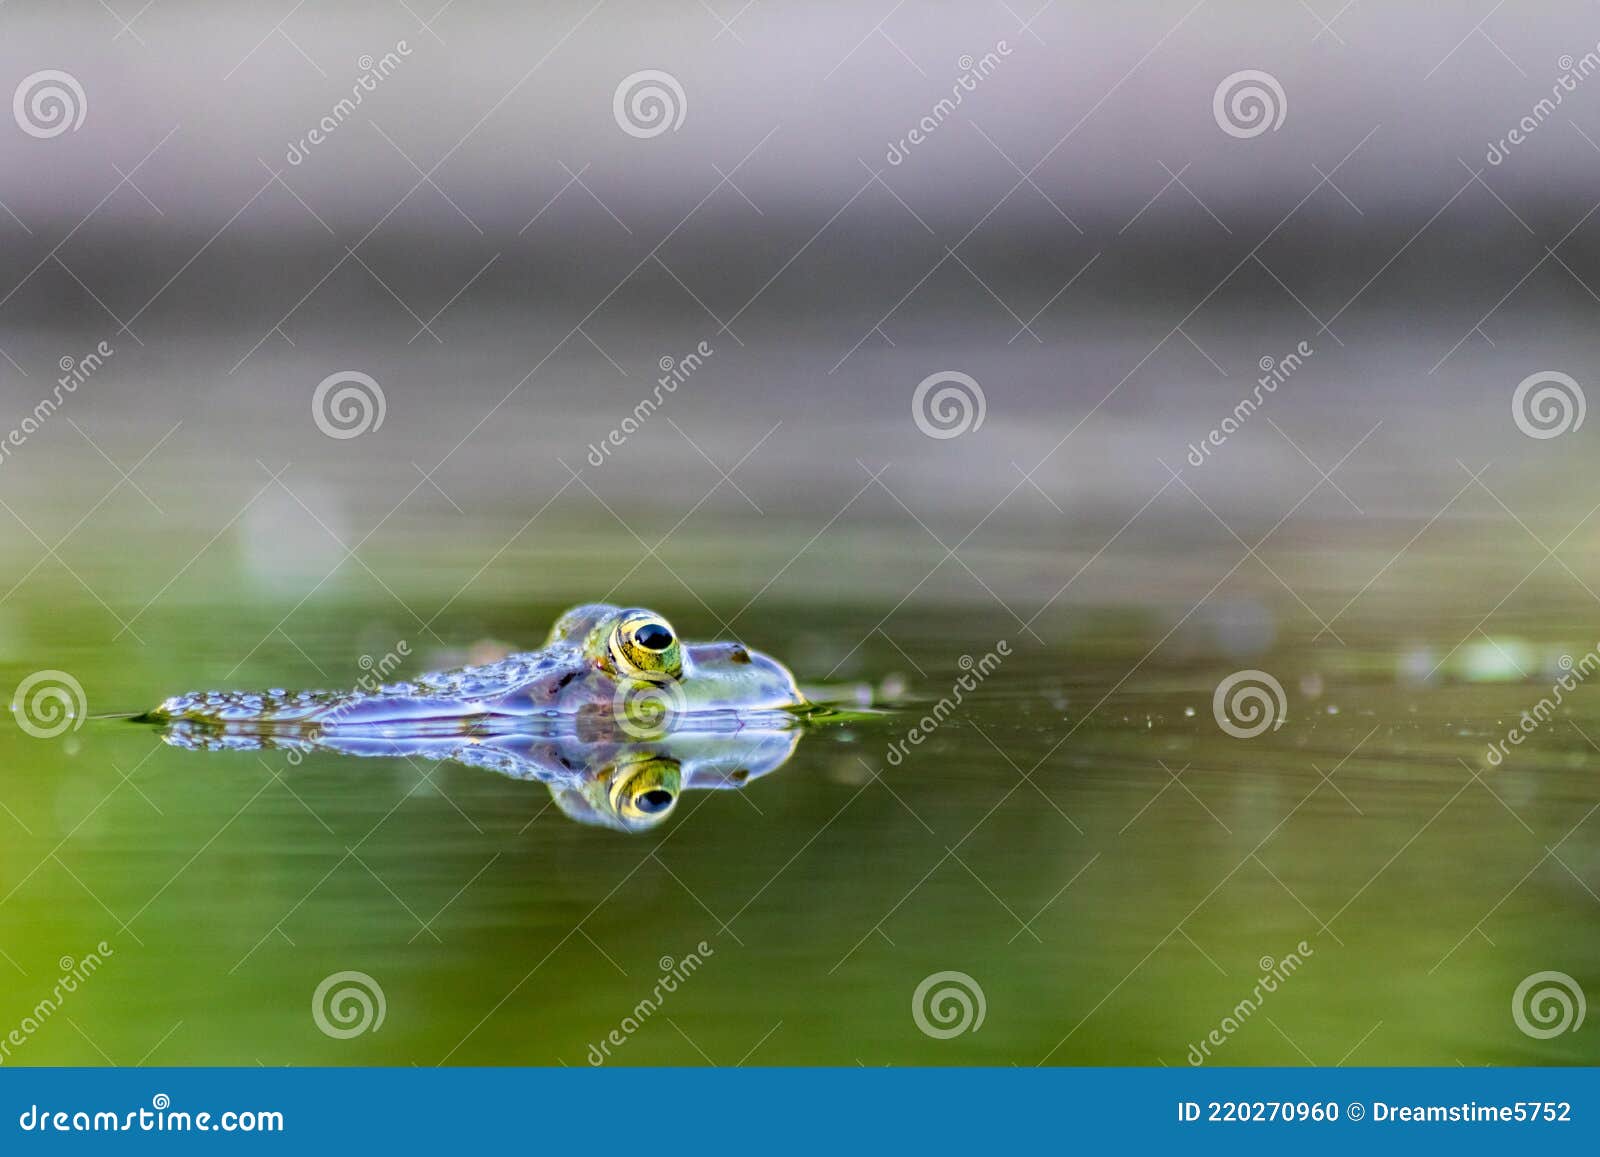 Großer Grüner Frosch Im Gartenteich Mit Schöner Reflexion an Der  Wasseroberfläche Zeigt Froschaugen Im Gartenbiotop in Makroansich Stockfoto  - Bild von auge, umgebung: 220270960